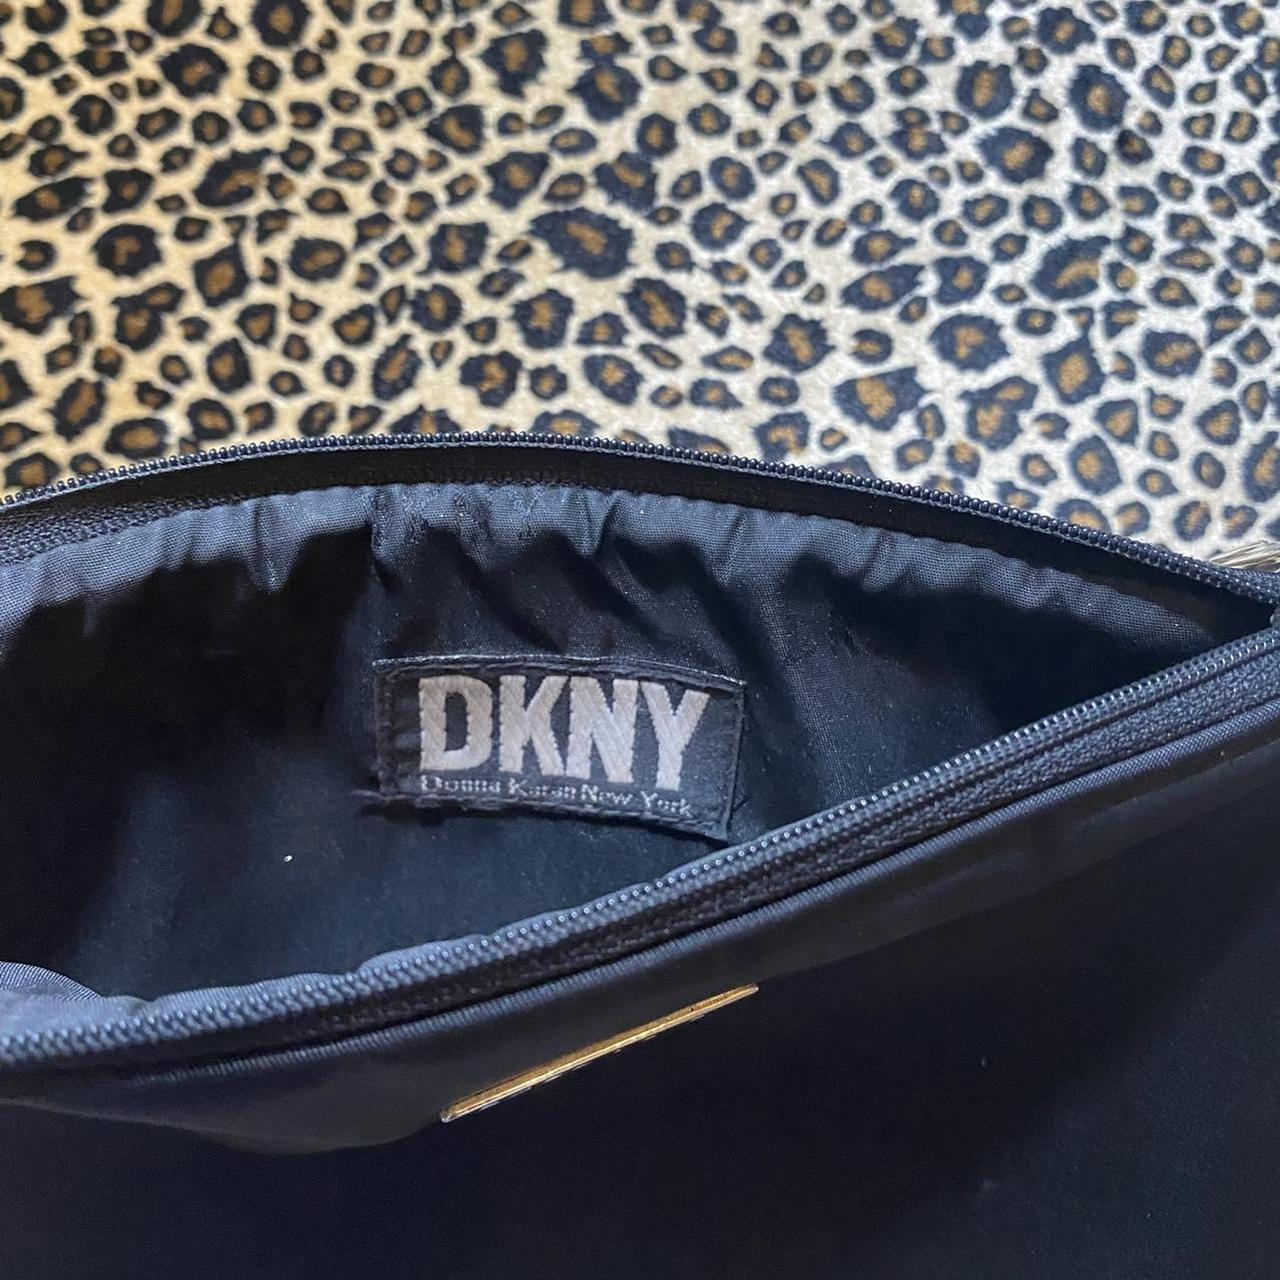 Product Image 3 - ♥︎ DKNY makeup bag ♥︎

♡